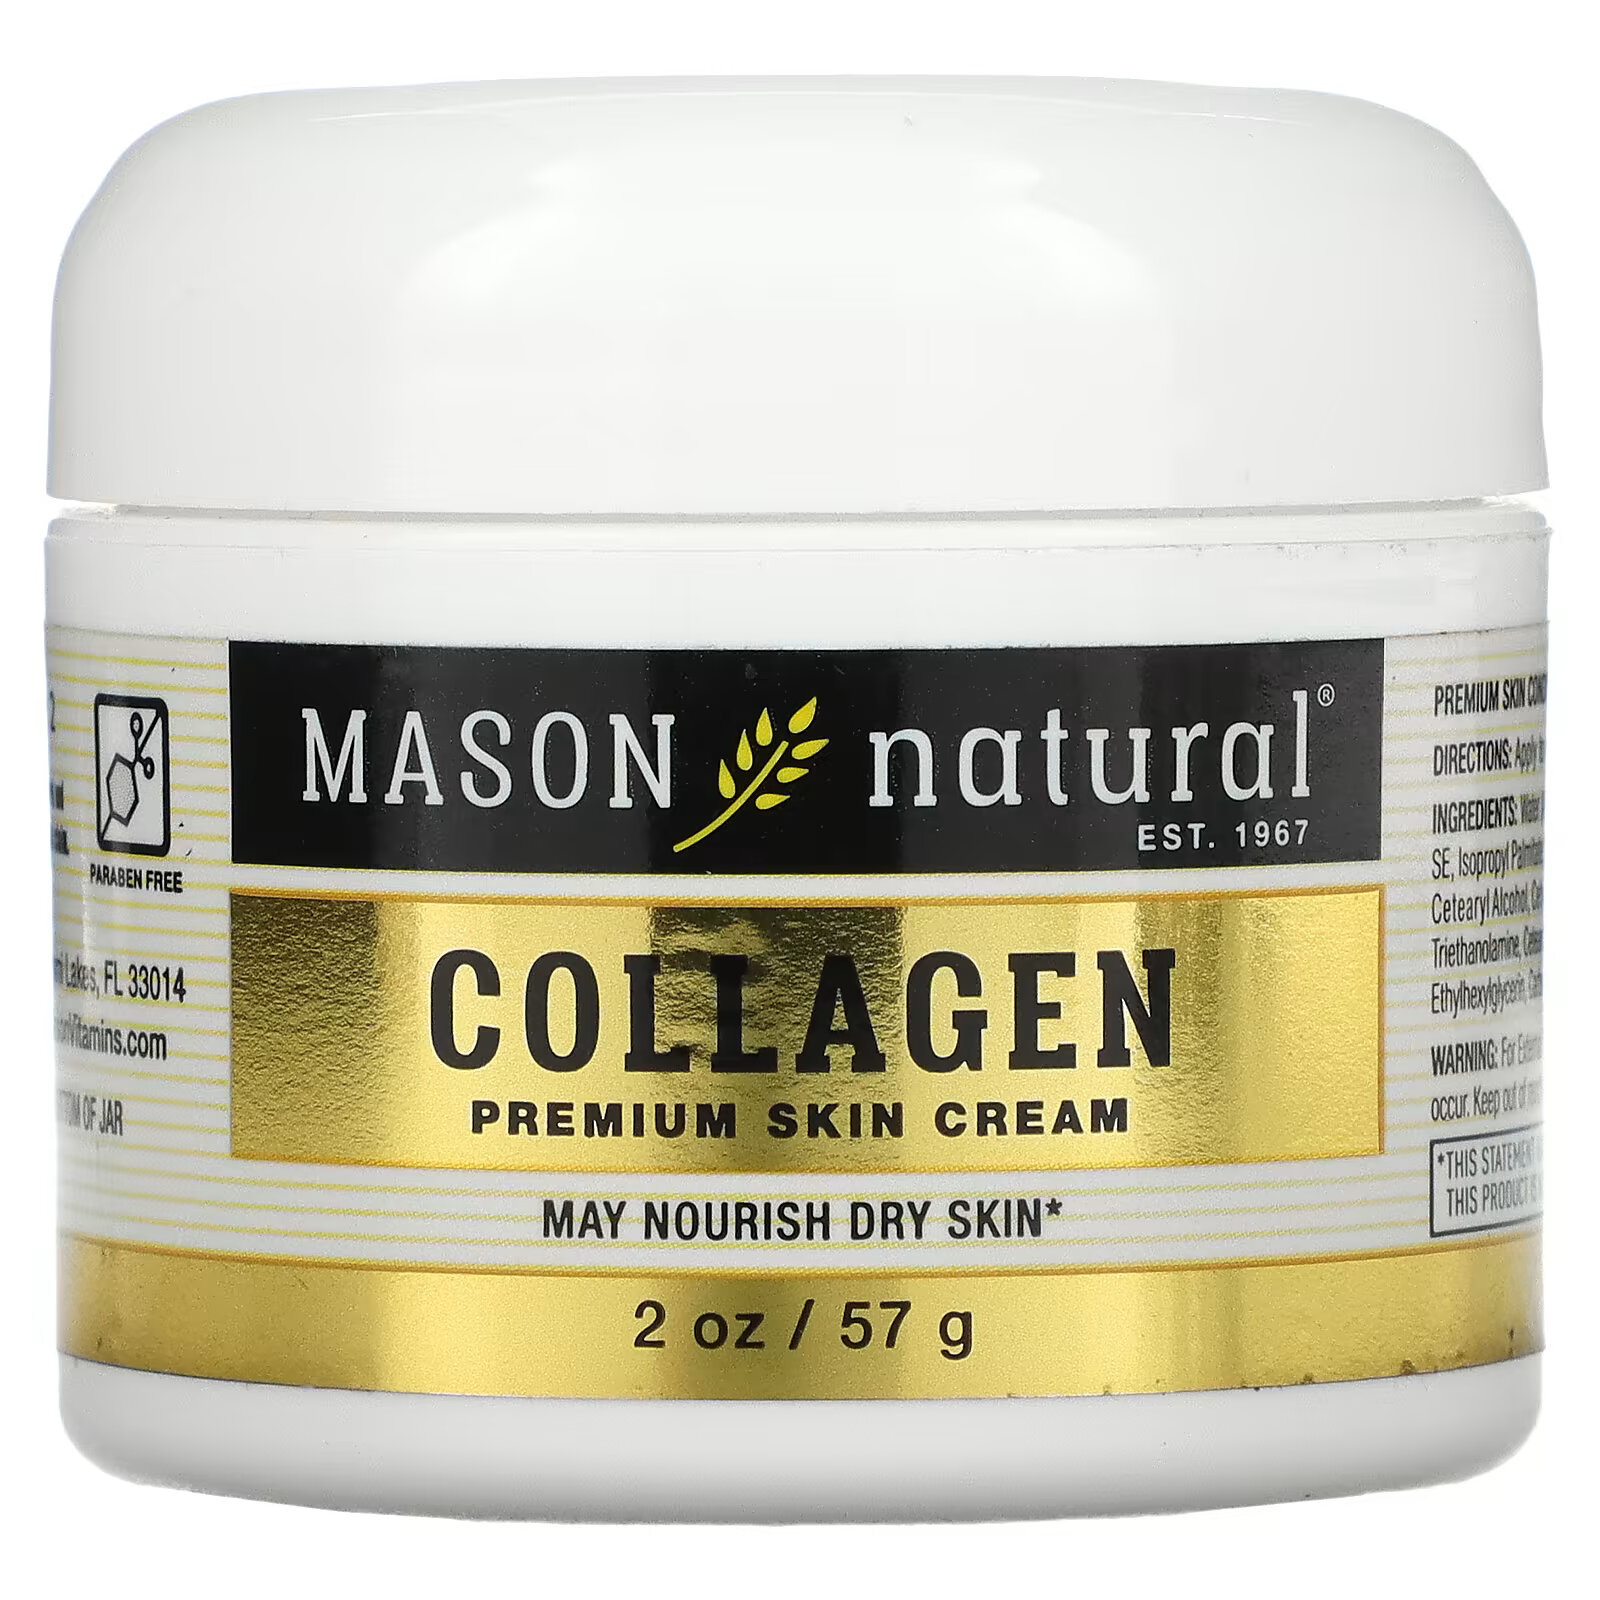 Крем Mason Natural с коллагеном премиального качества, 57 г крем для кожи mason natural с кокосовым маслом и крем для кожи премиального качества с коллагеном